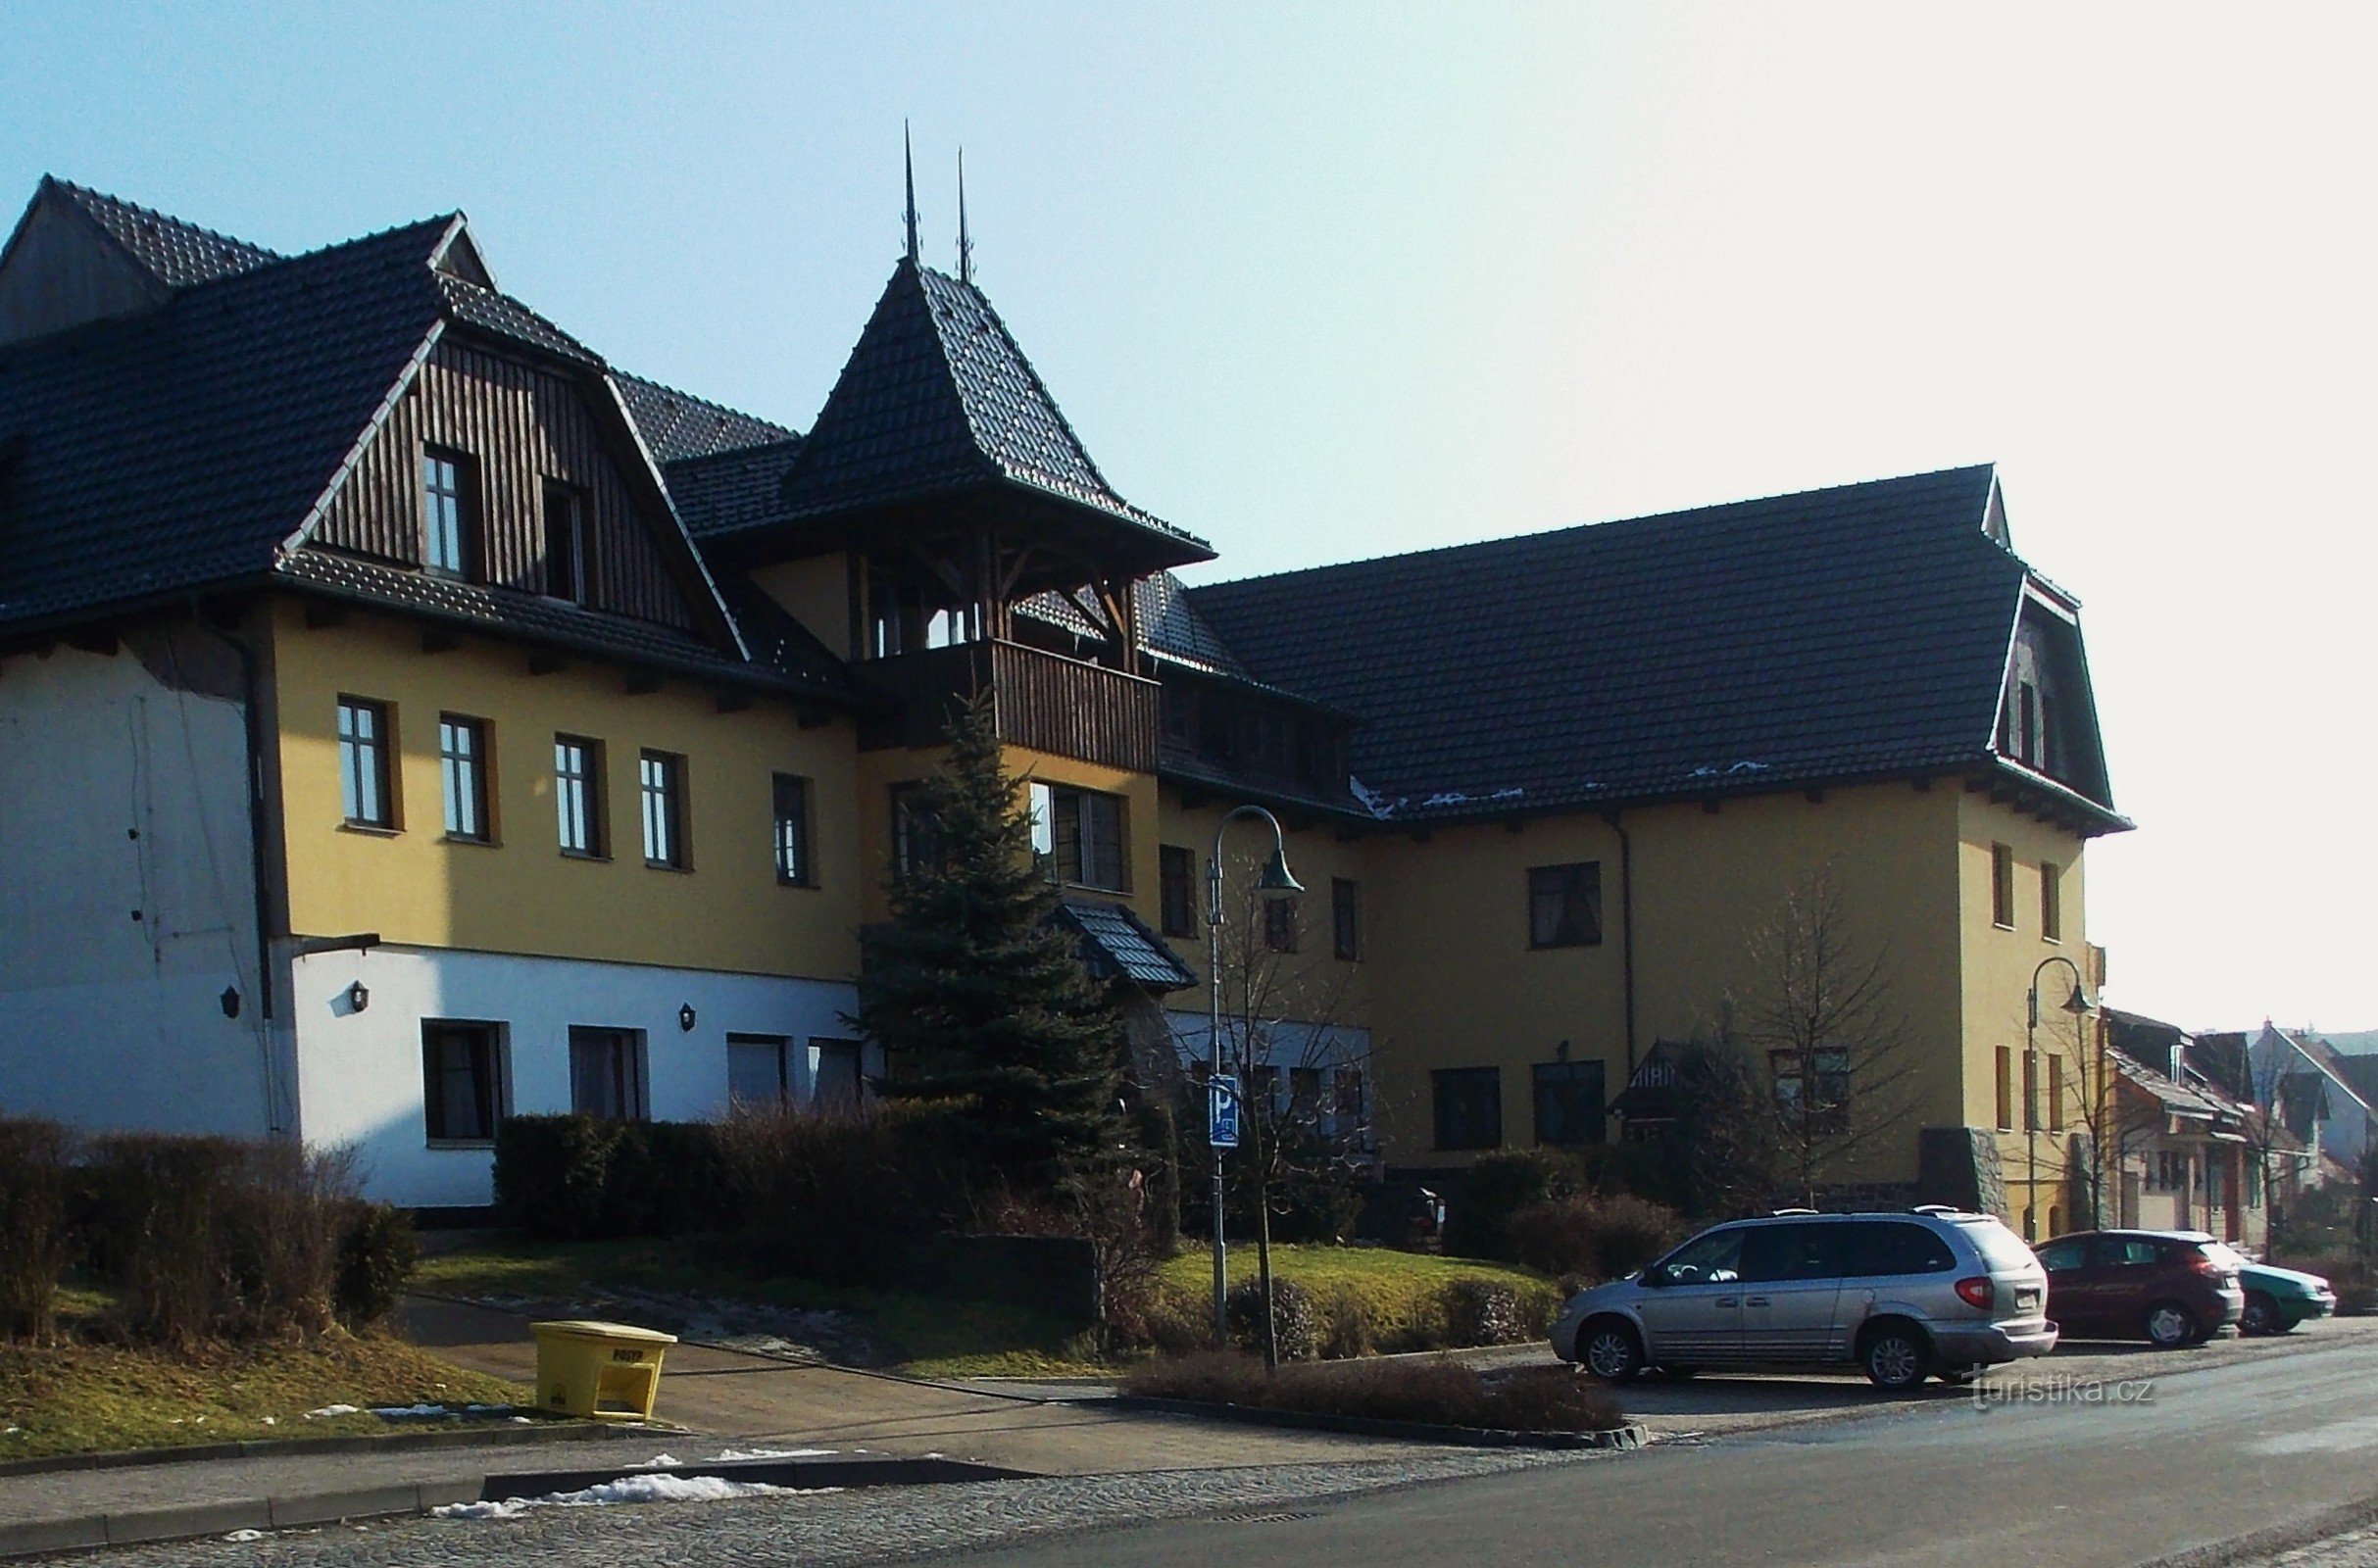 Valašský šenk och Hotel Ogar i Pozlovice nära Luhačovice